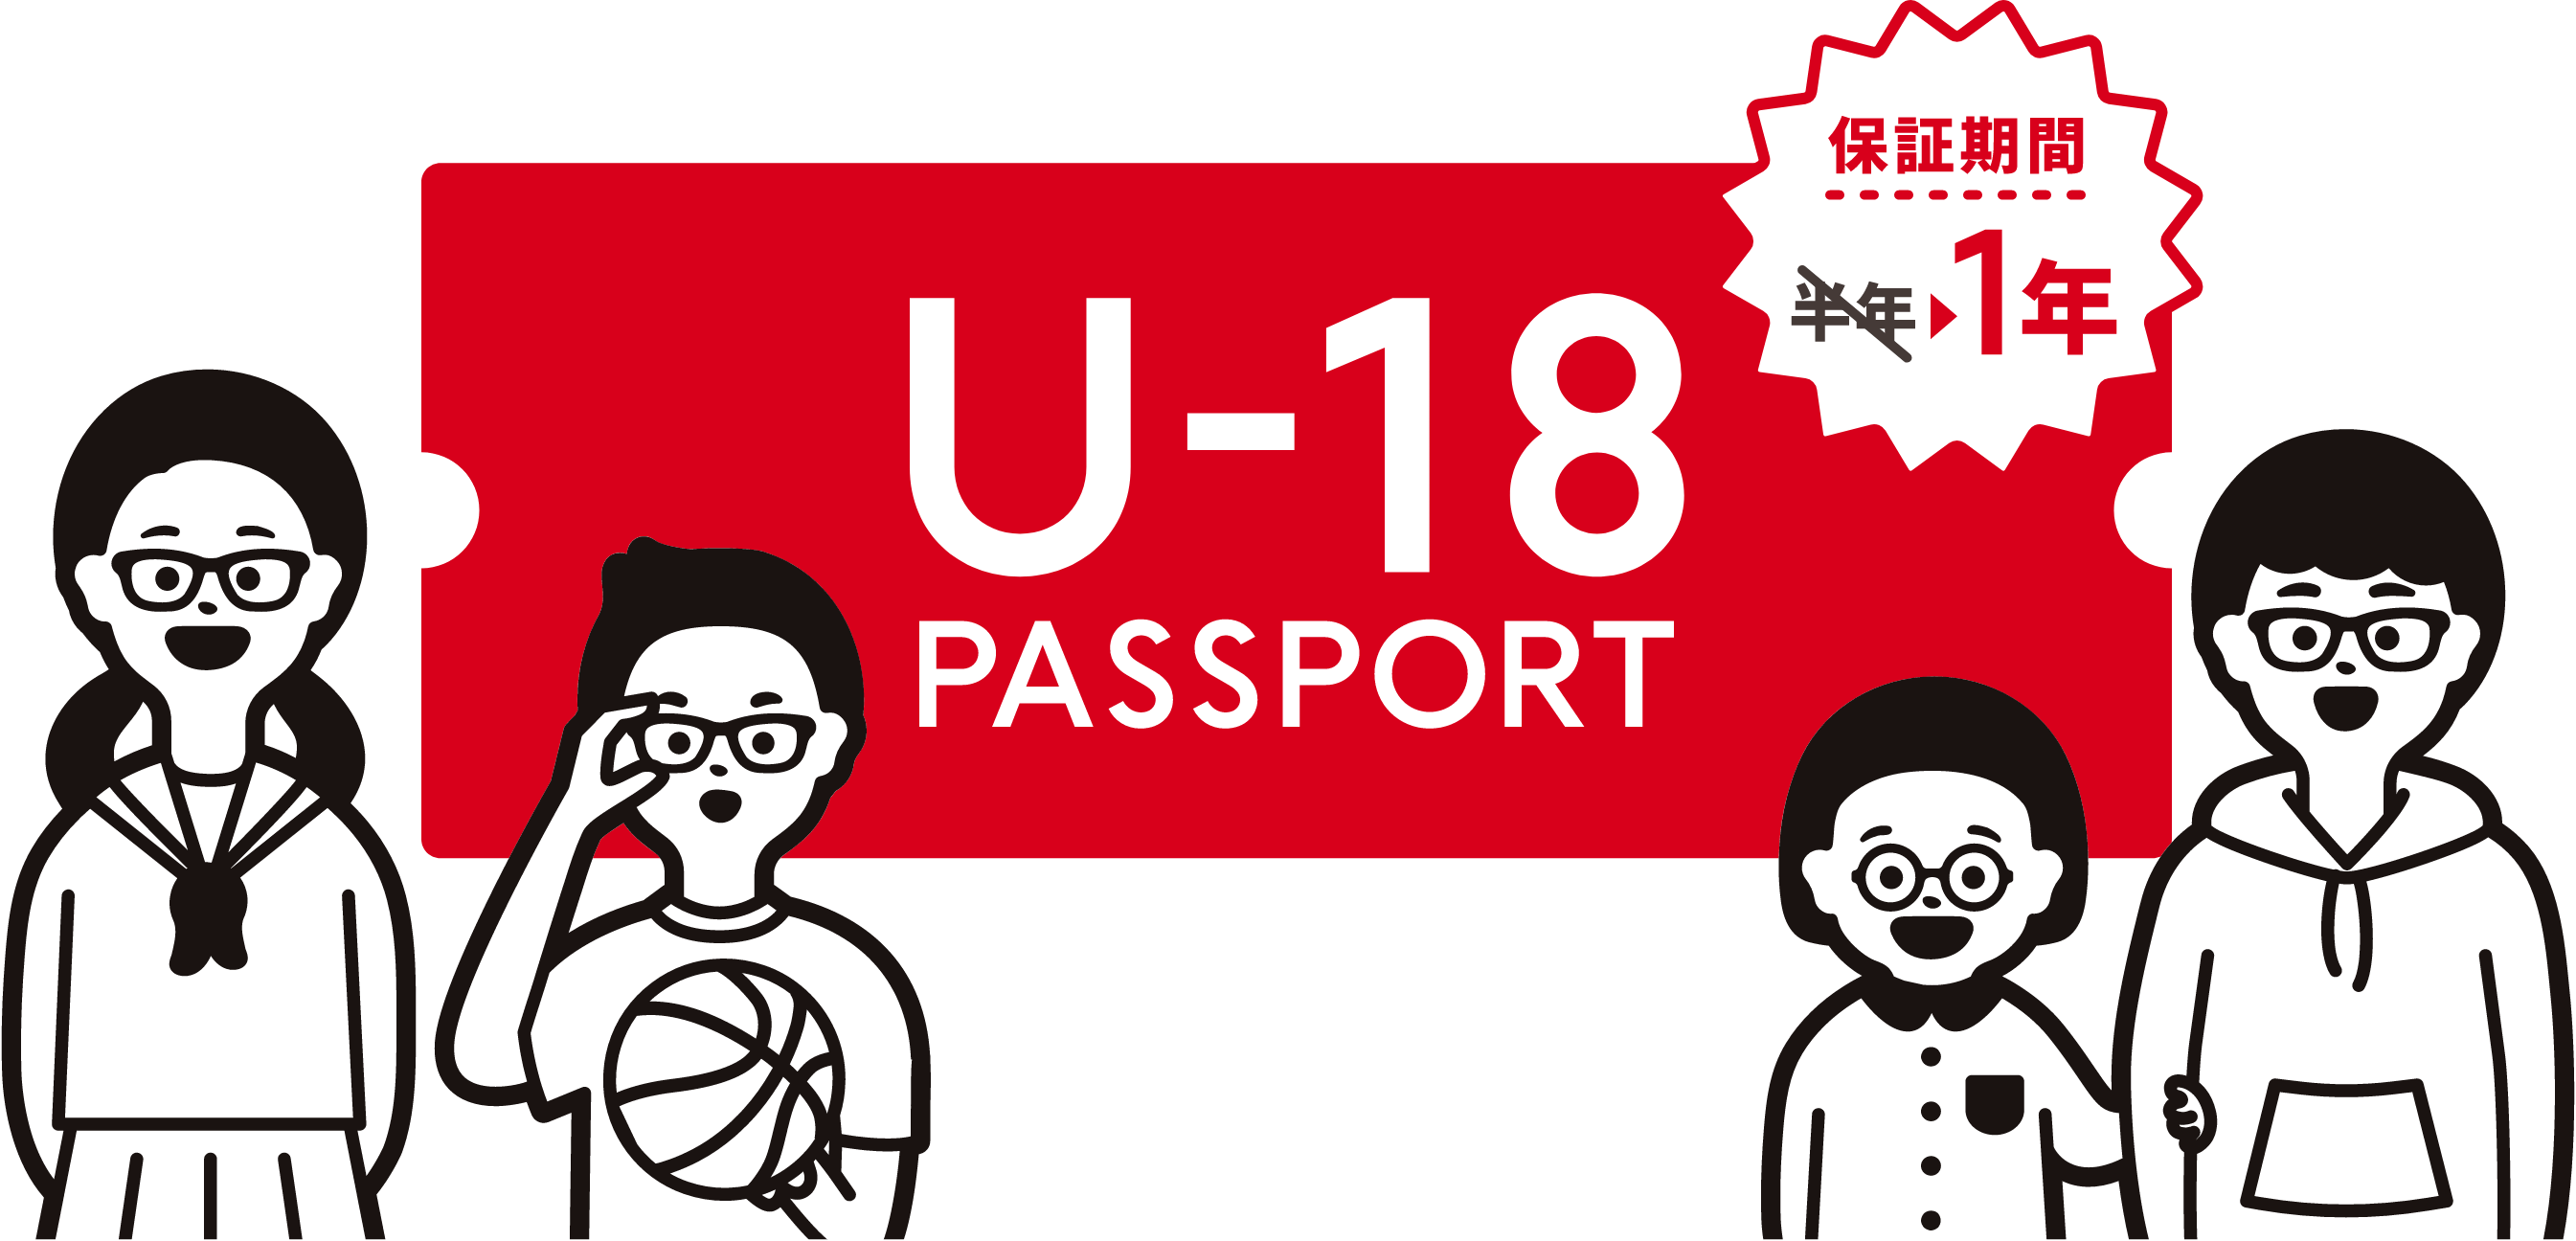 U-18パスポート 保証期間1年